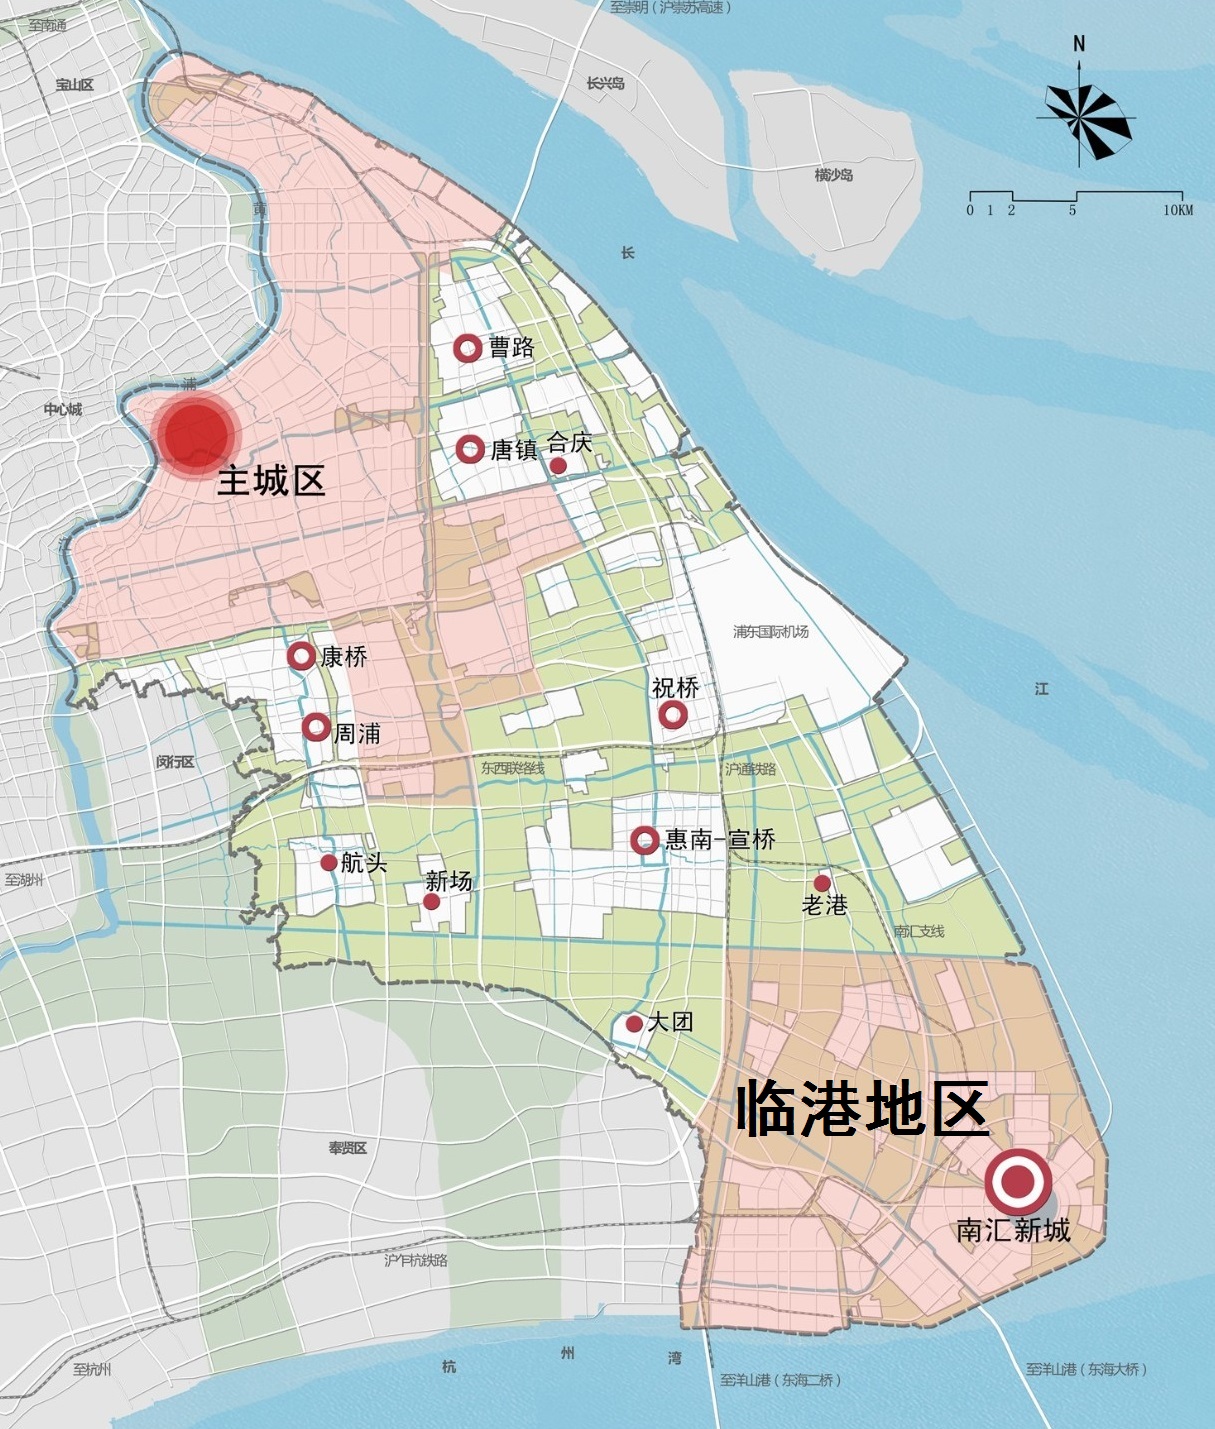 展望上海浦东临港地区前景:依托自贸区临港新片区,劣势变优势